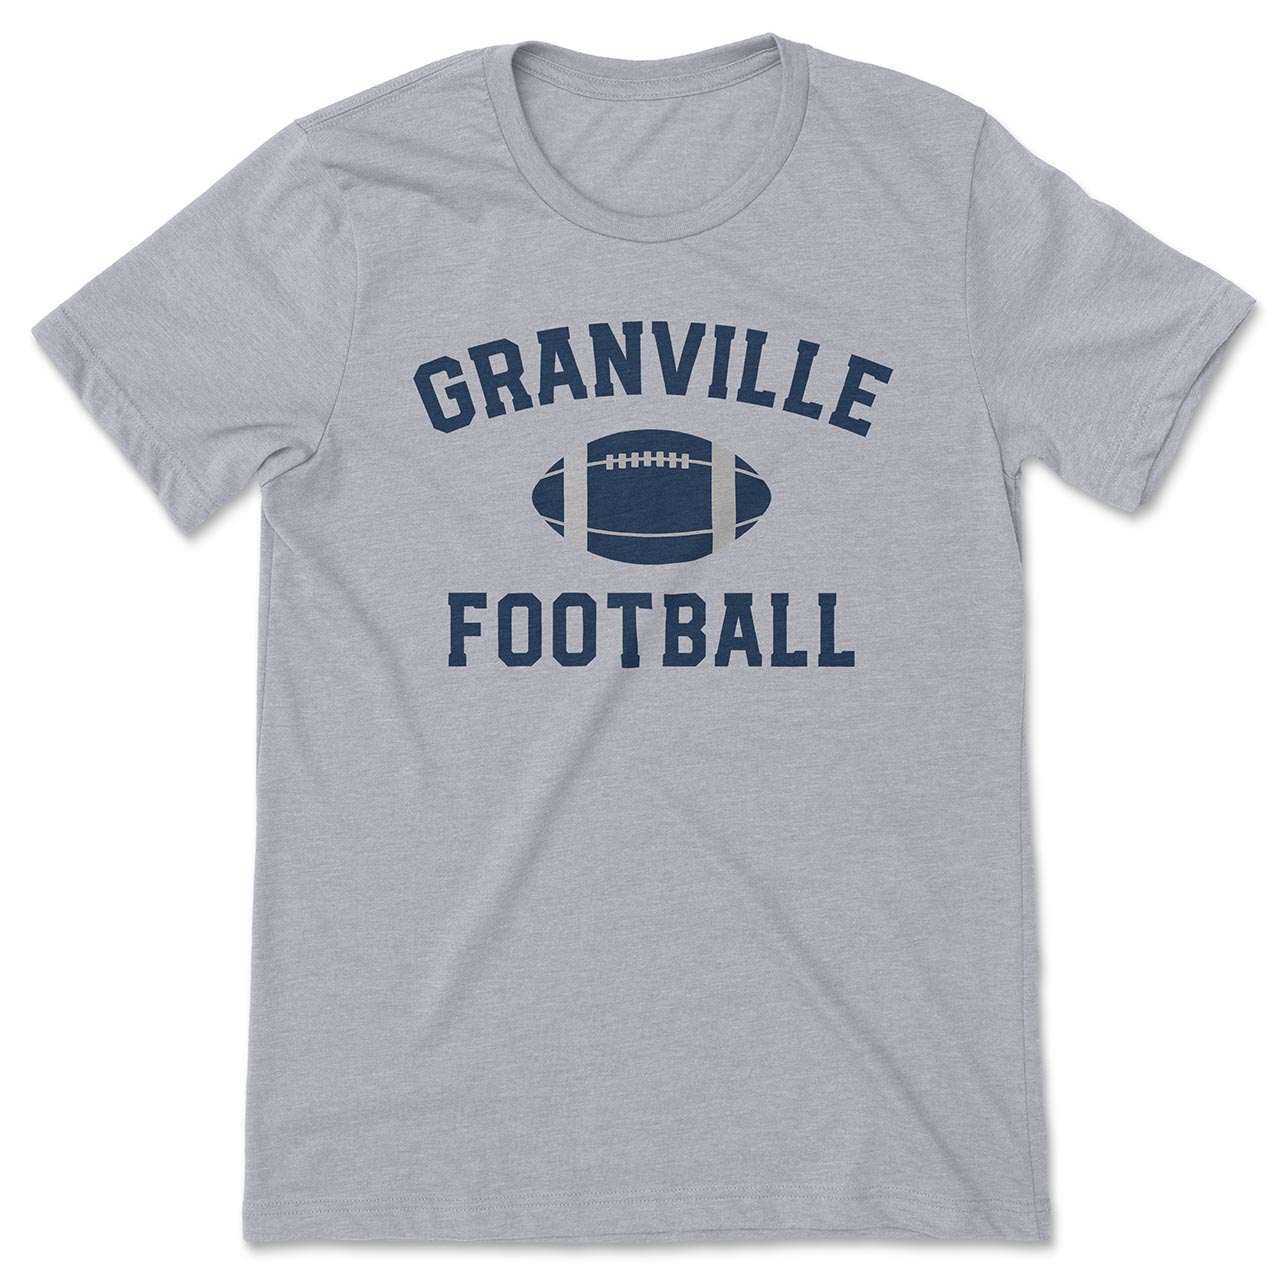 GRANVILLE FOOTBALL – 587granville